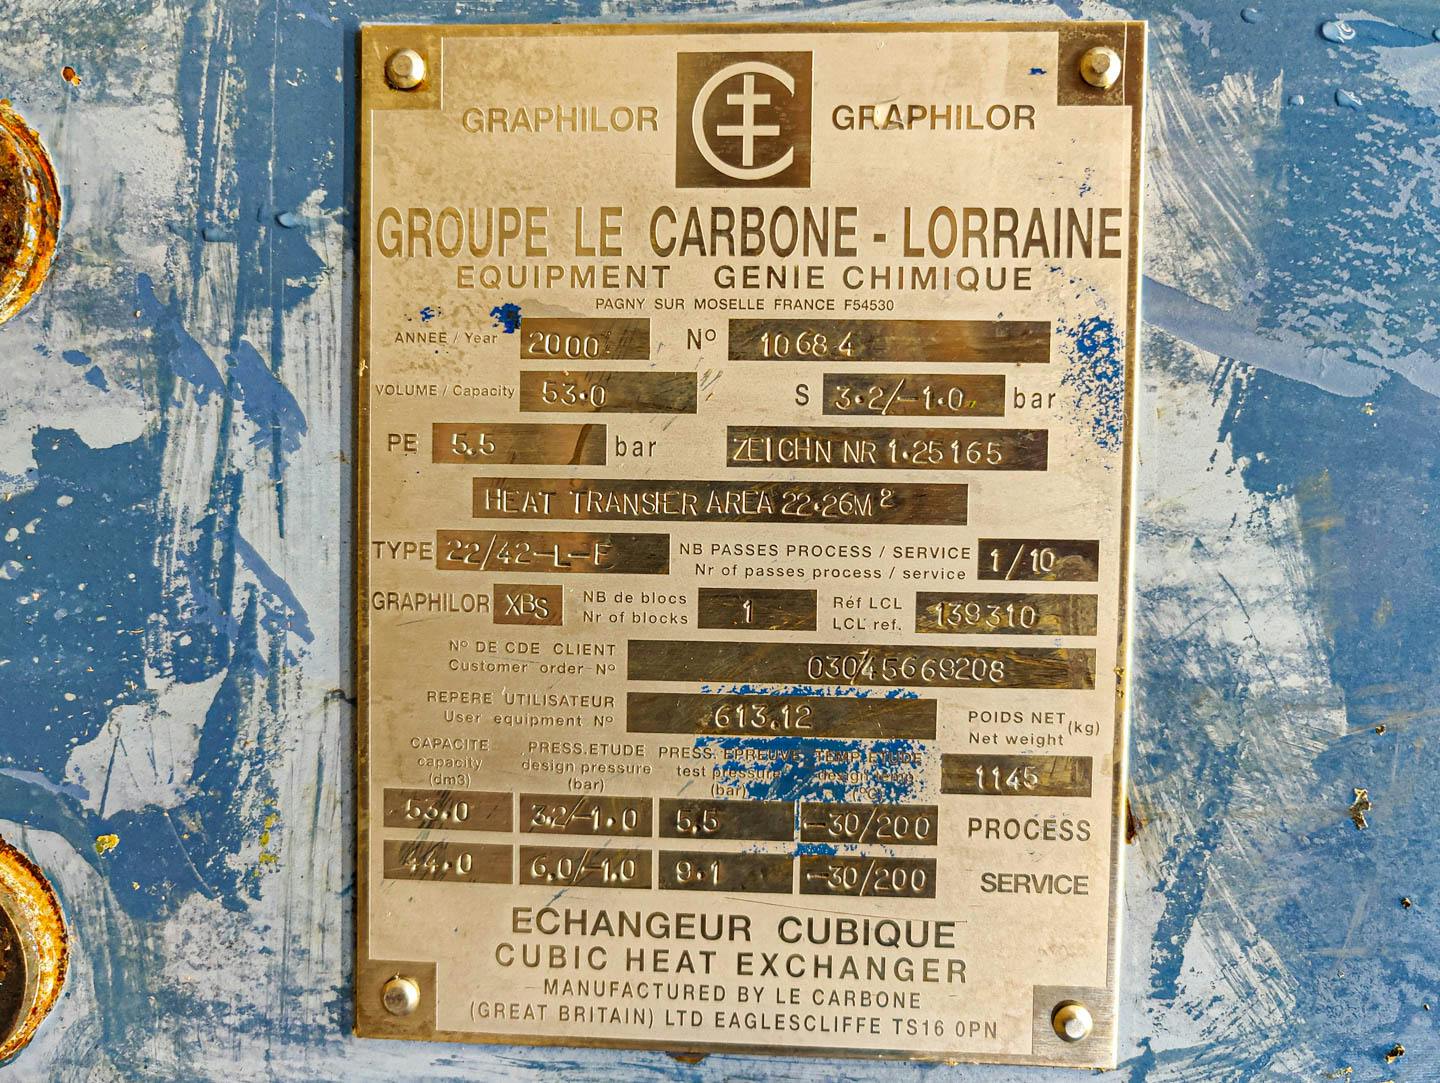 Le Carbone-Lorraine NK22/42-L-F - Échangeur de température tubulaire - image 8